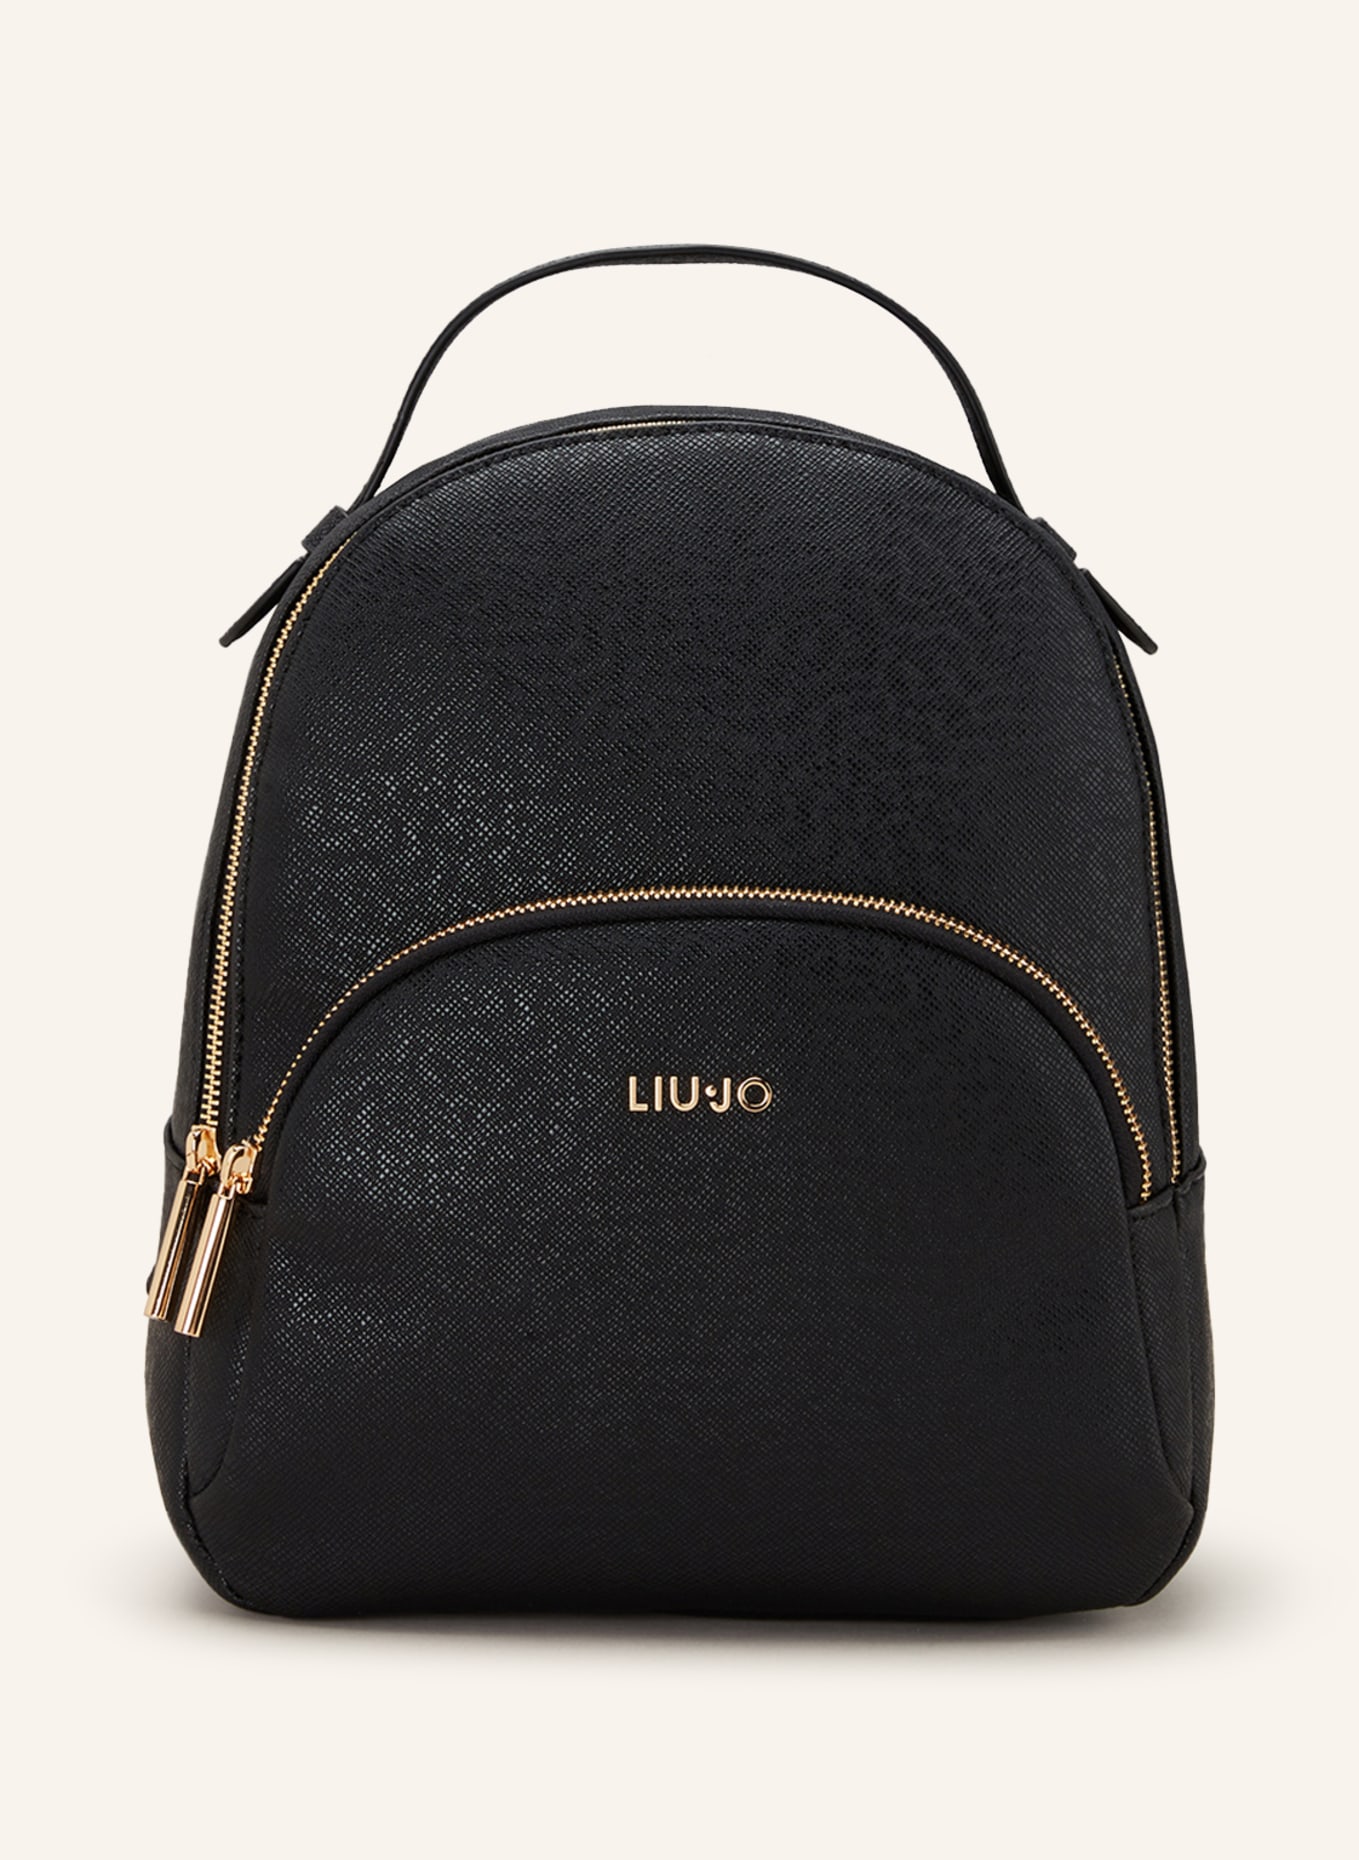 LIU JO Backpack, Color: BLACK (Image 1)